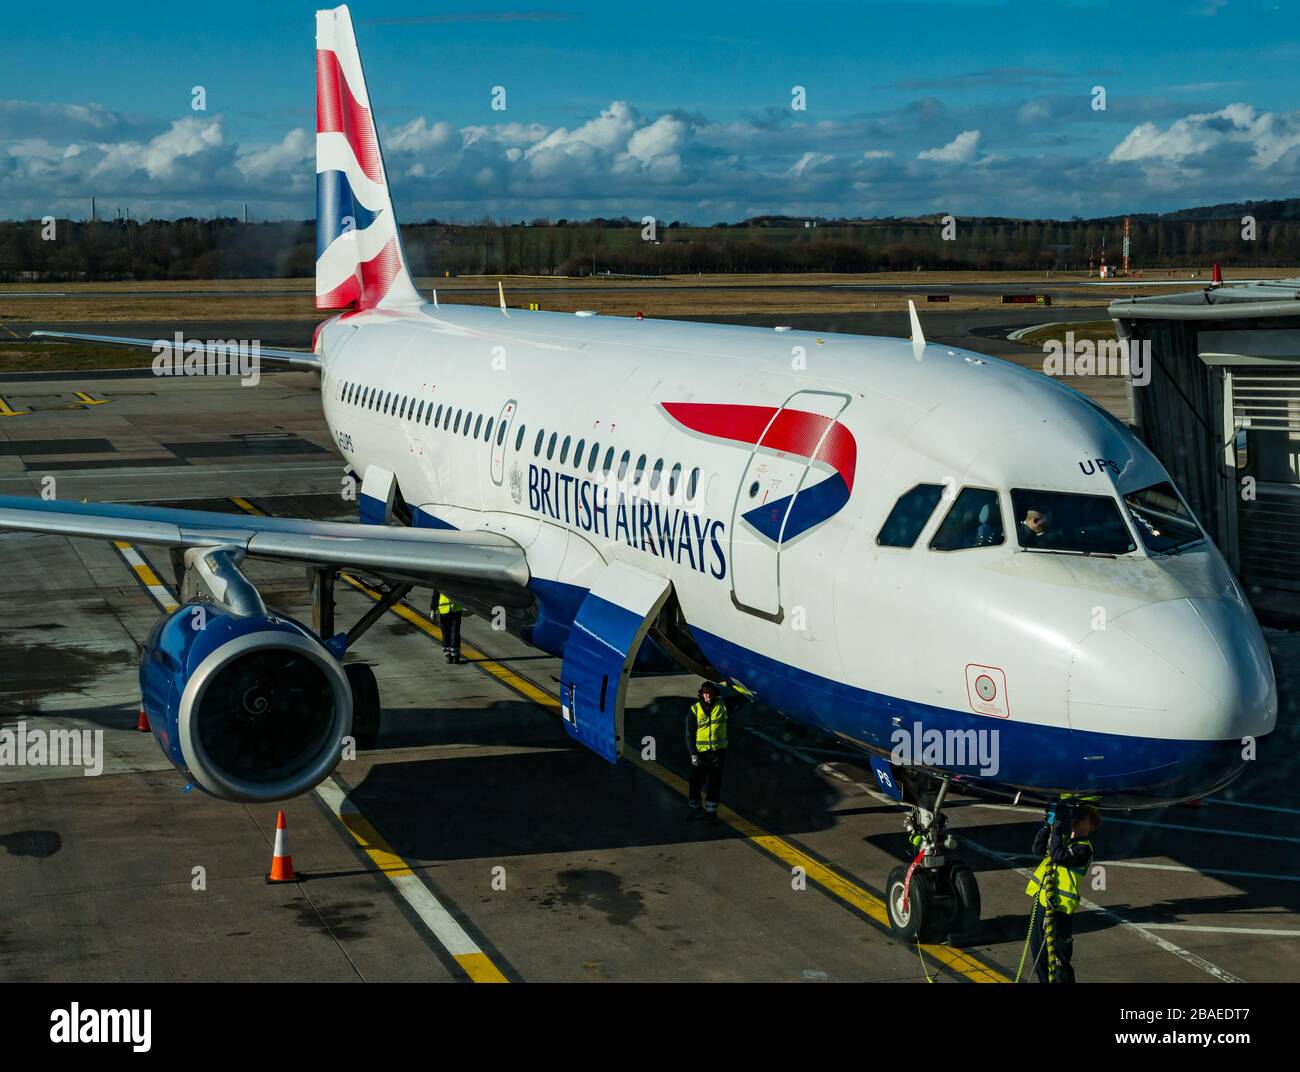 British Airways avion sur le tablier de l'aéroport d'Edimbourg, Edimbourg, Ecosse, Royaume-Uni Banque D'Images